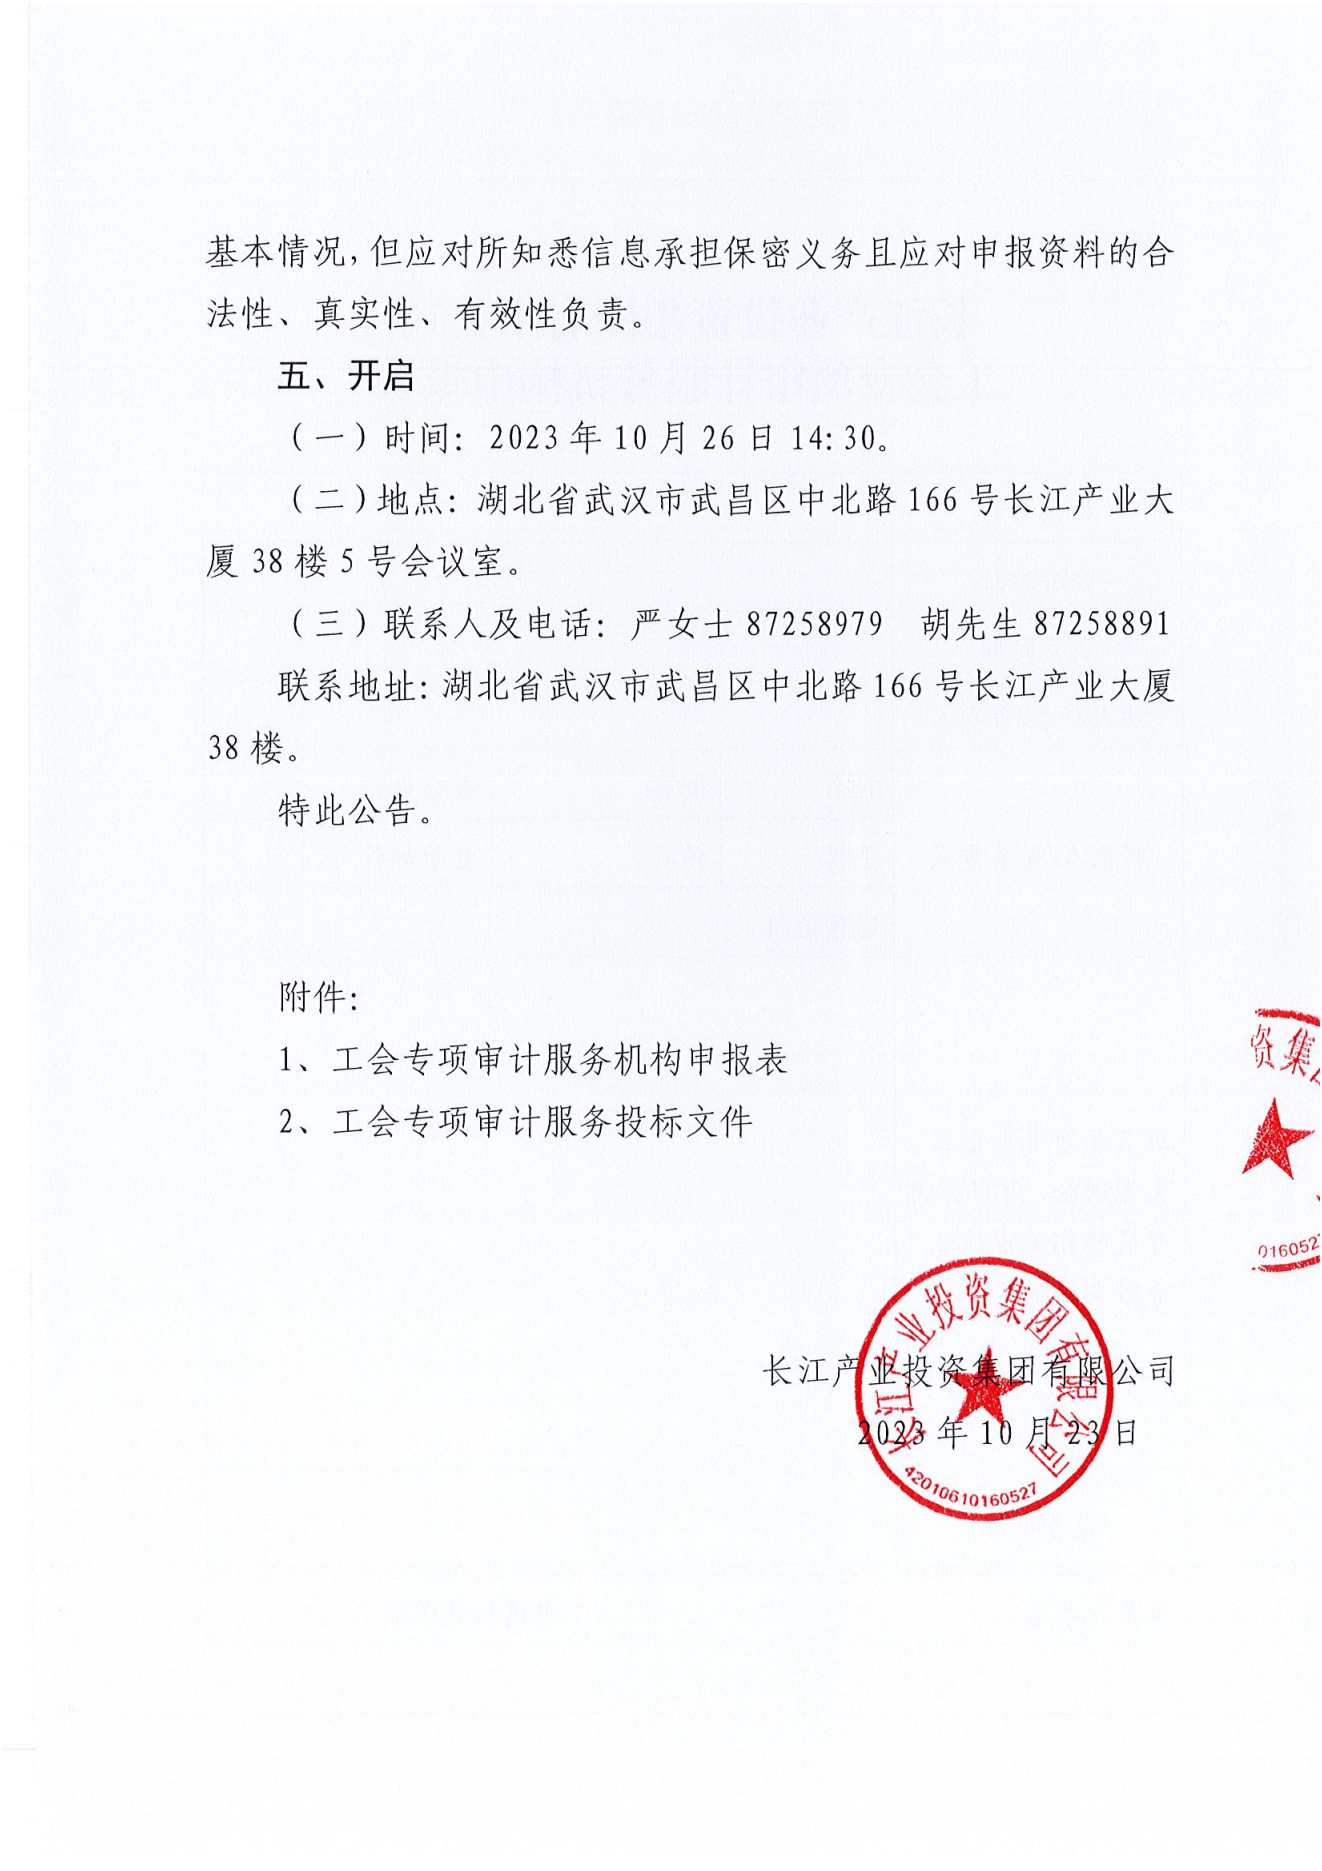 亚娱体育·(中国)官方网站工会专项审计项目竞争性磋商公告_02.png